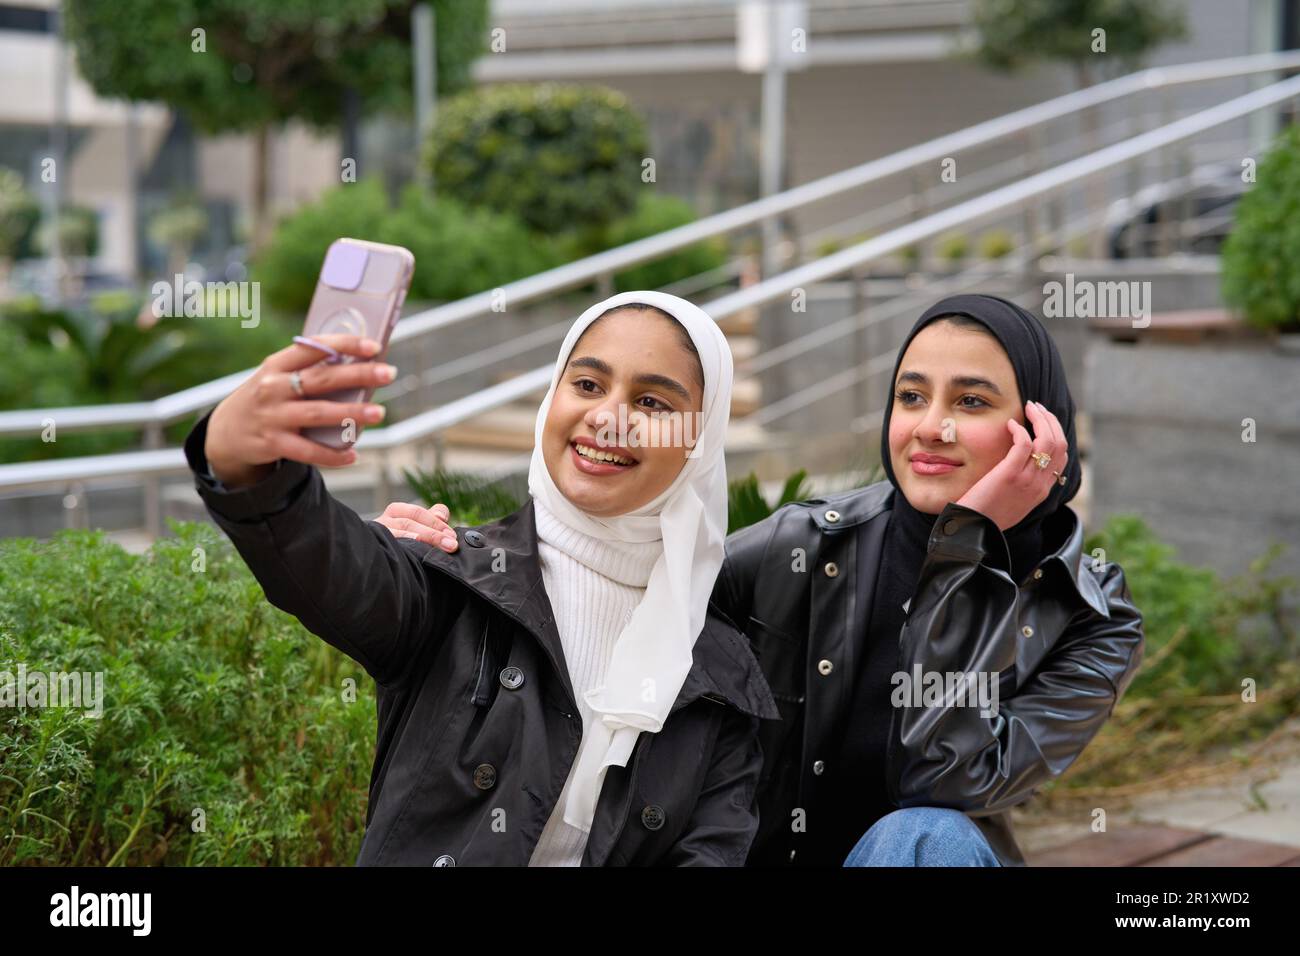 Junge muslimische Frauen mit Hijabs, die Selfie machen Stockfoto